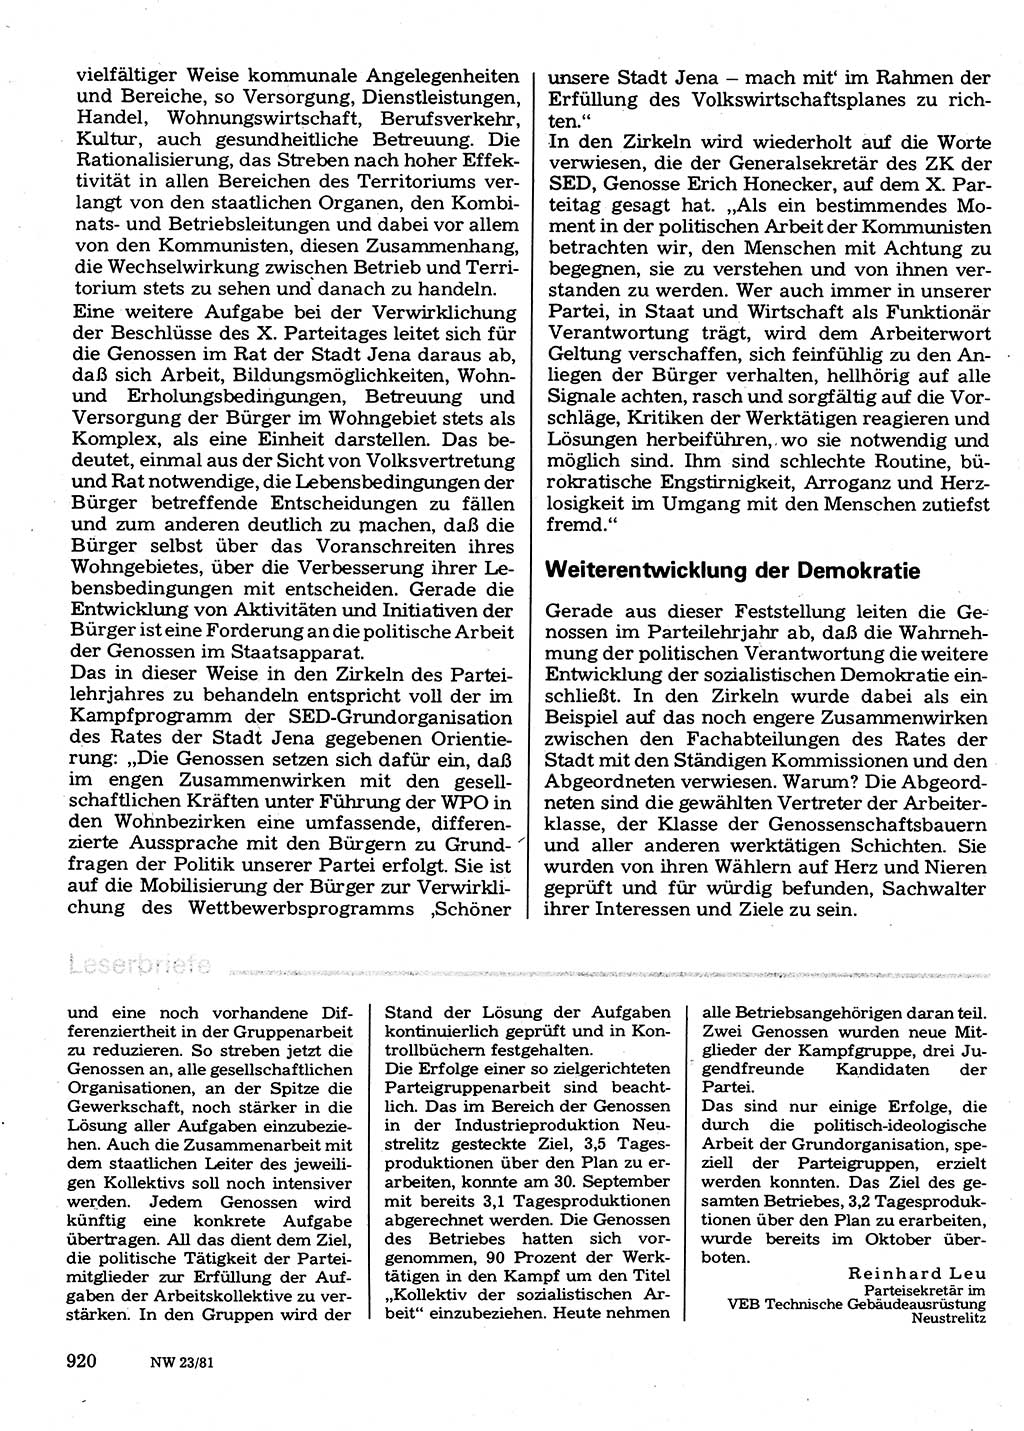 Neuer Weg (NW), Organ des Zentralkomitees (ZK) der SED (Sozialistische Einheitspartei Deutschlands) für Fragen des Parteilebens, 36. Jahrgang [Deutsche Demokratische Republik (DDR)] 1981, Seite 920 (NW ZK SED DDR 1981, S. 920)